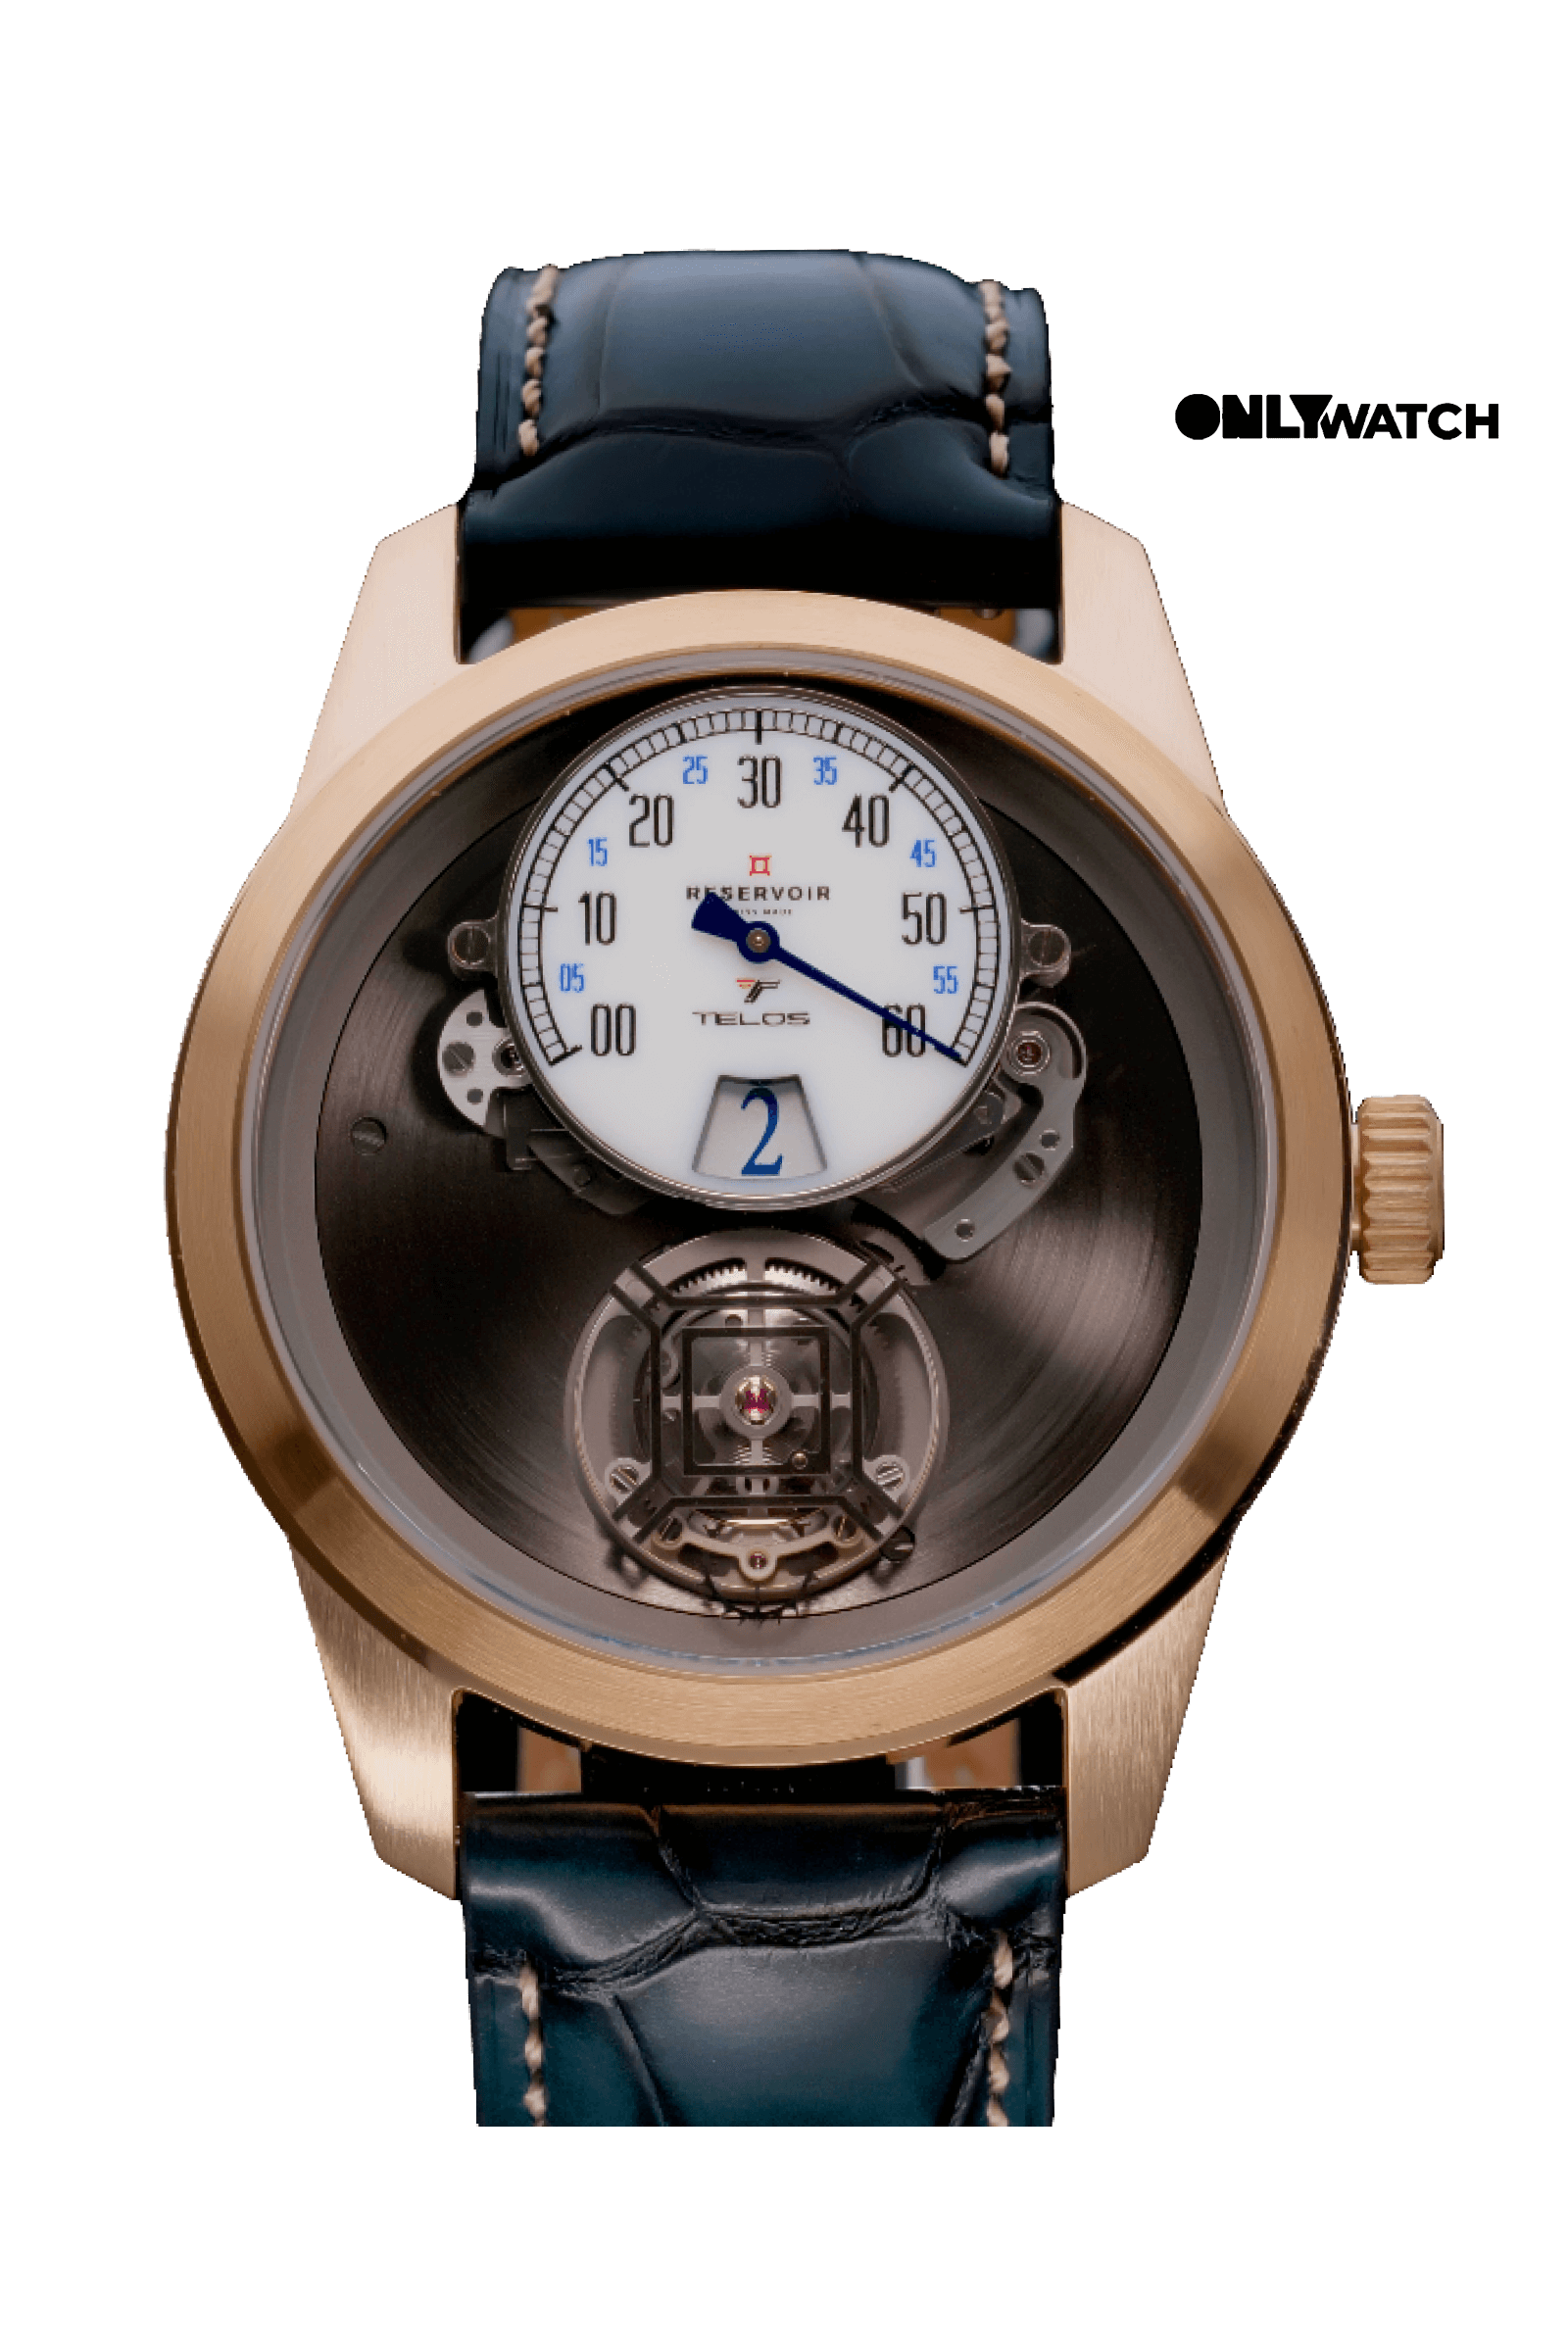 ラグジュアリーSwissmade トゥールビヨンTiefenmesser ブロンズ、ブラック、ライトベージュ、ライトグレー・ブルーの腕時計。